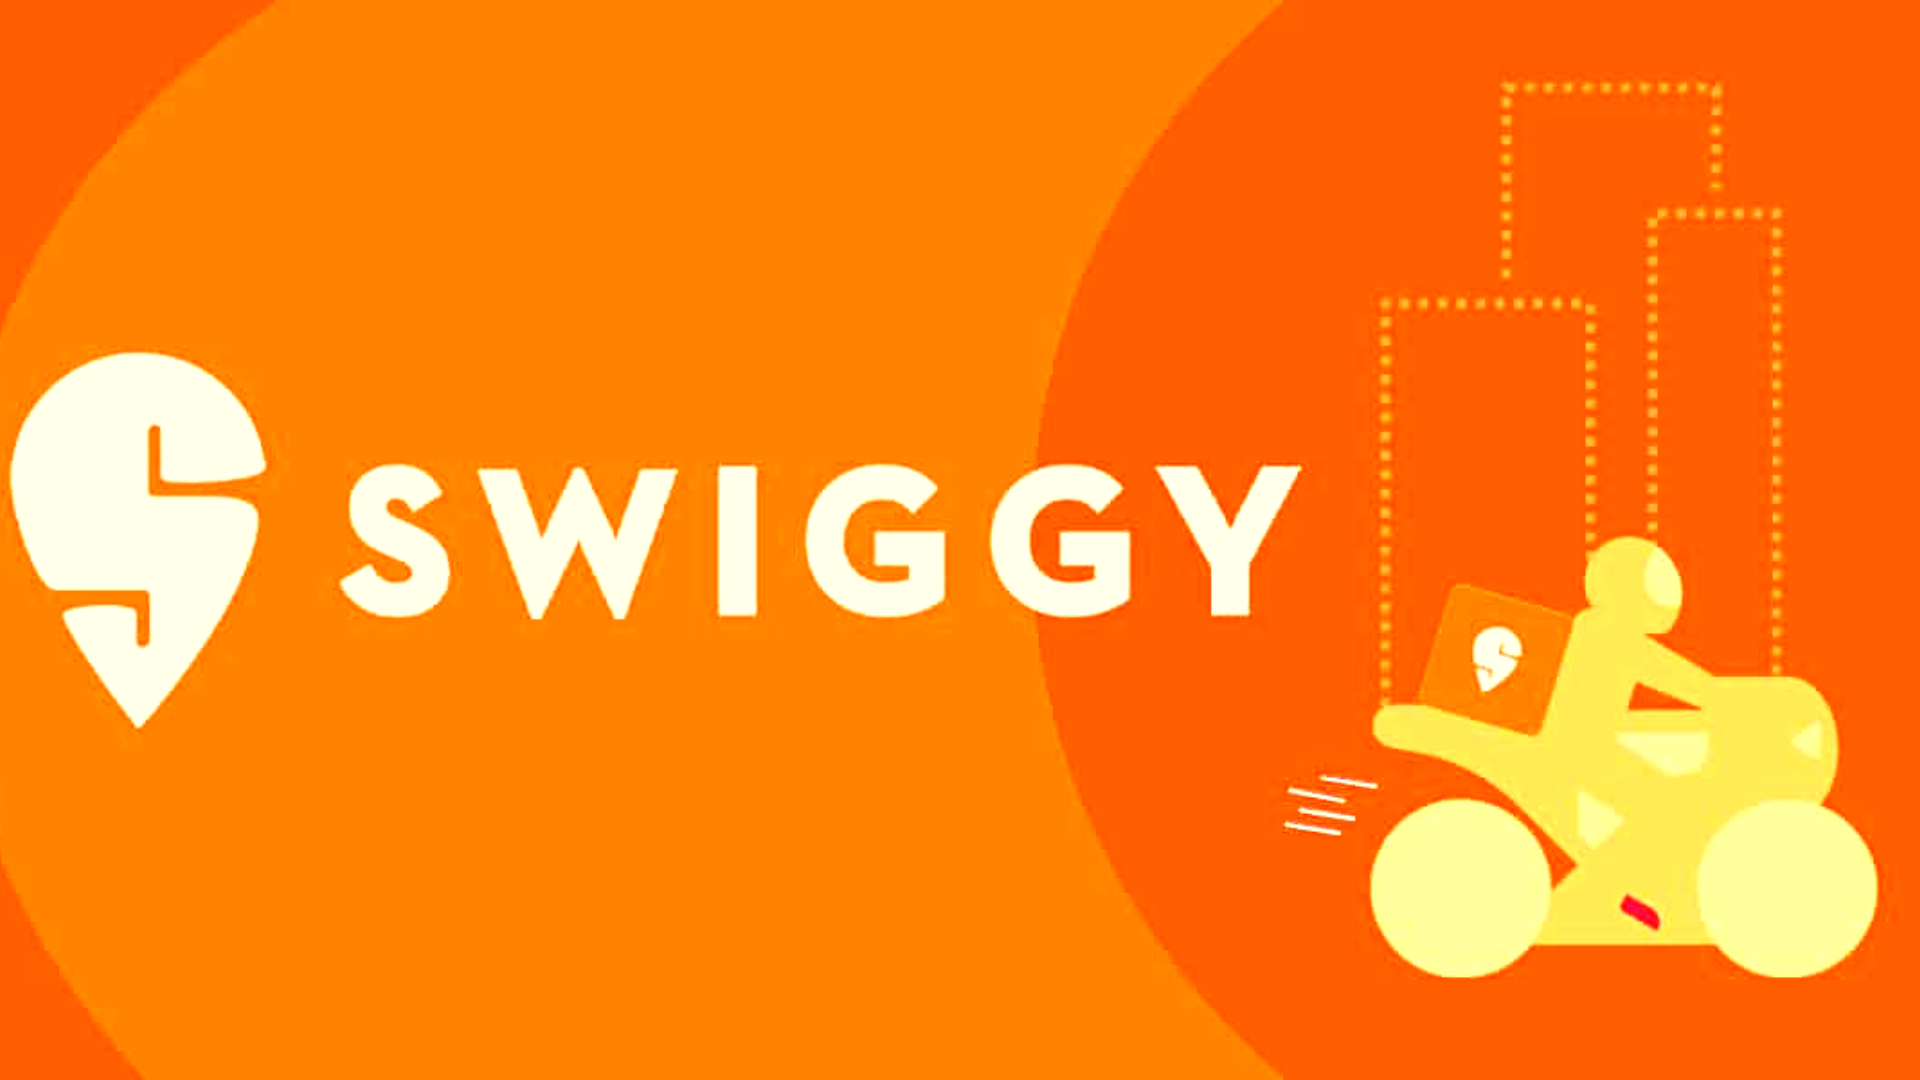 How To Delete Swiggy Account?